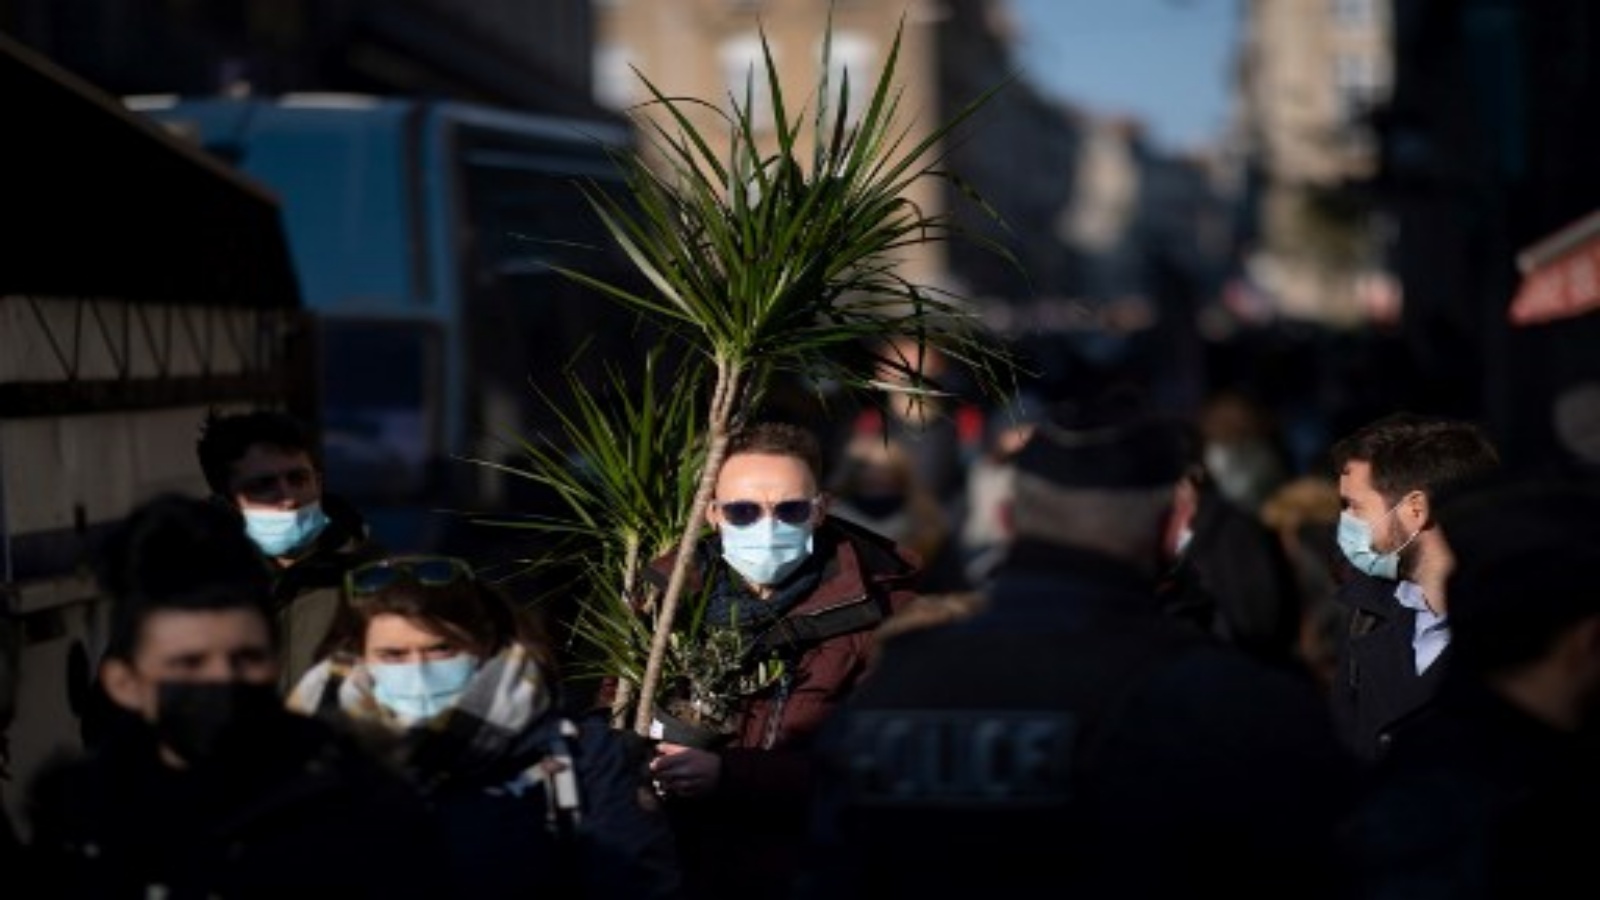 أشخاص يرتدون أقنعة الوجه يسيرون في أحد الشوارع ، في 9 يناير 2021 في رين ، غرب فرنسا ، وسط الأزمة المرتبطة بوباء كوفيد -19 الناجم عن فيروس كورونا الجديد.